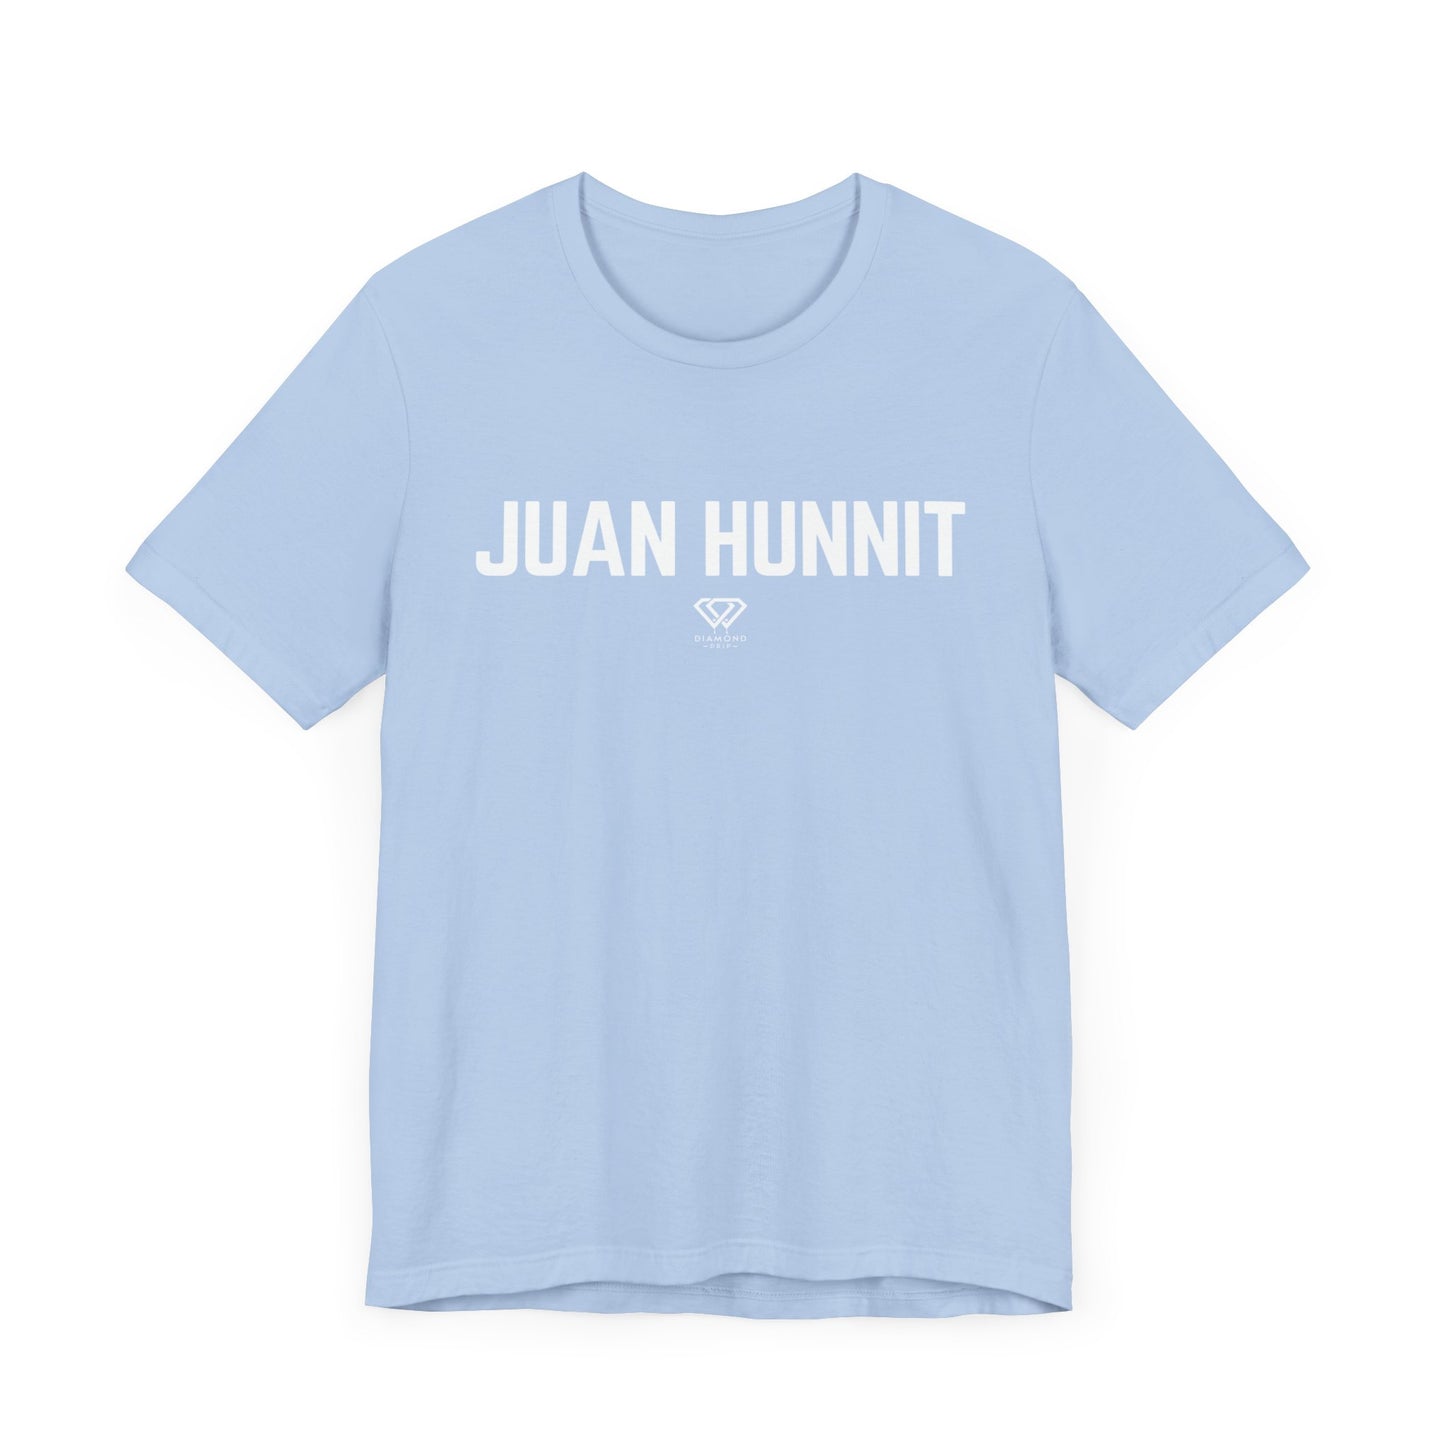 Juan Hunnit 💯